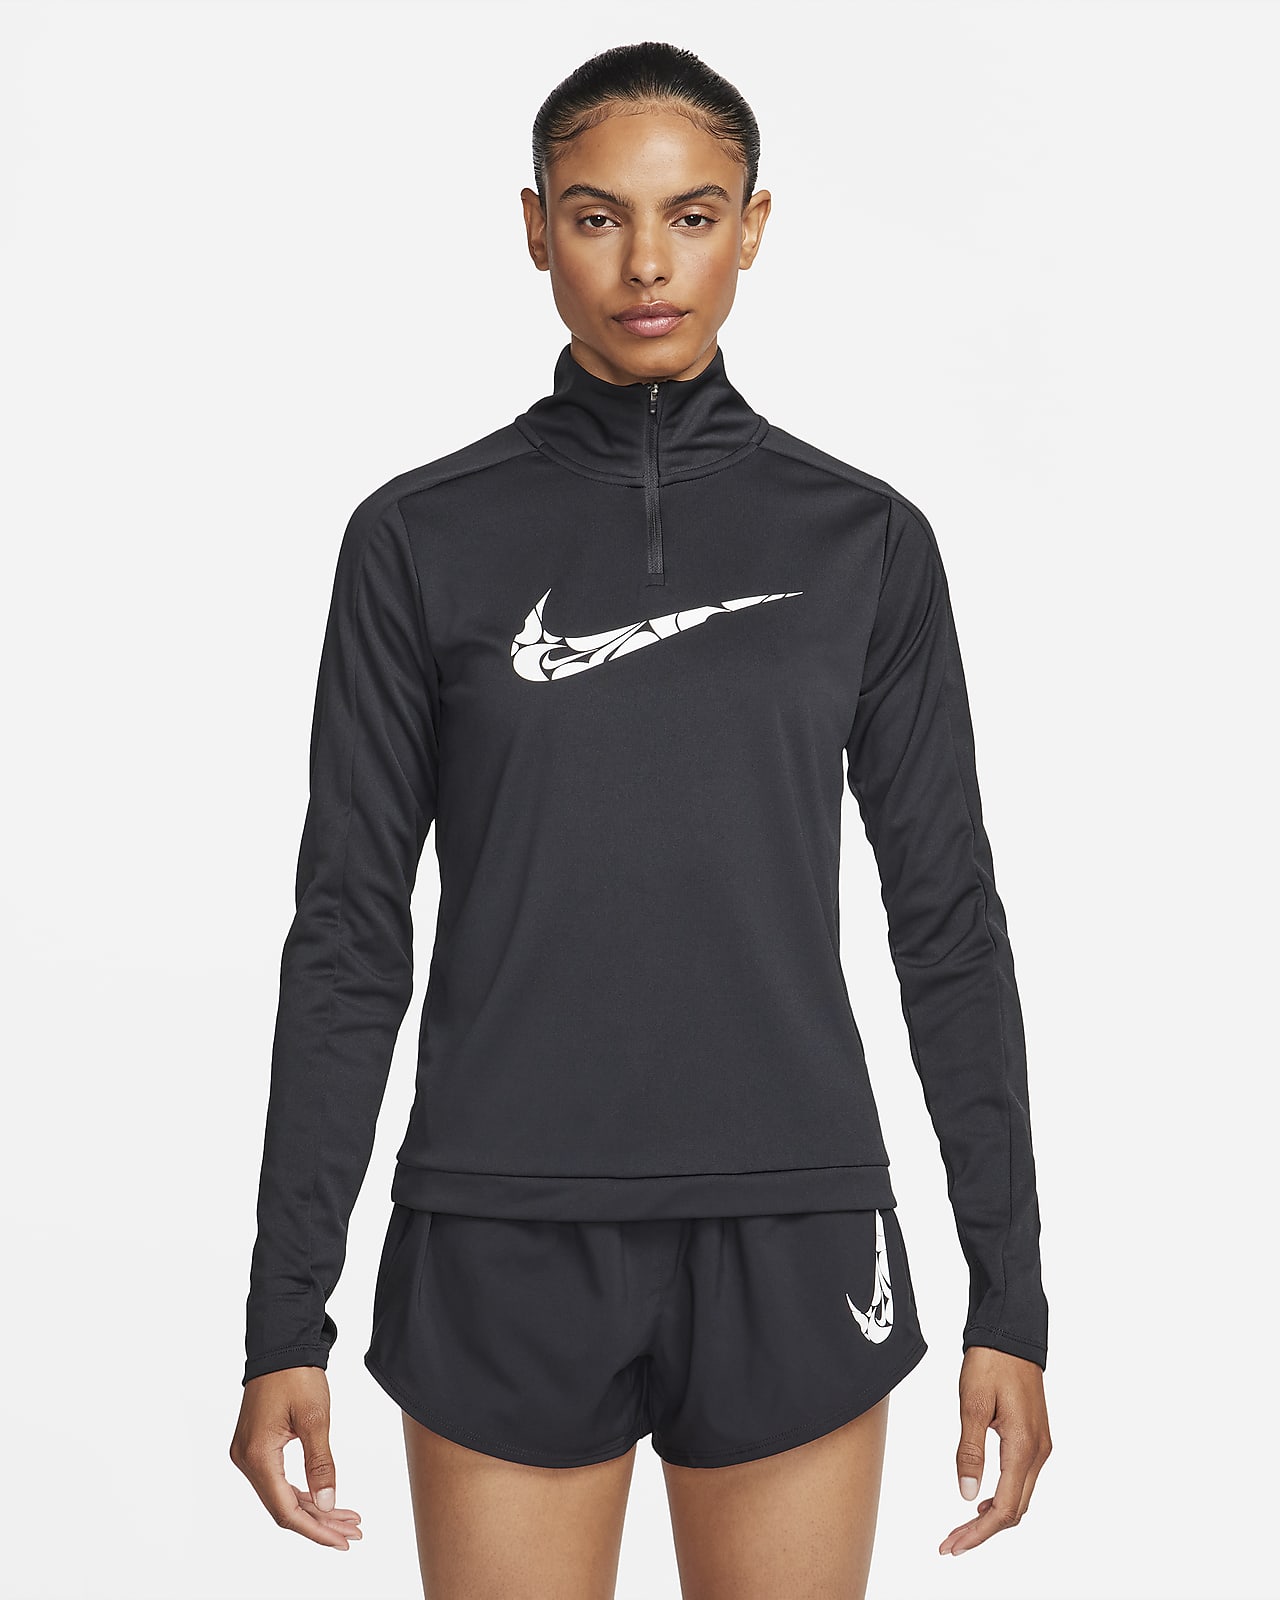 Dámská střední vrstva Nike Swoosh Dri-FIT se čtvrtinovým zipem